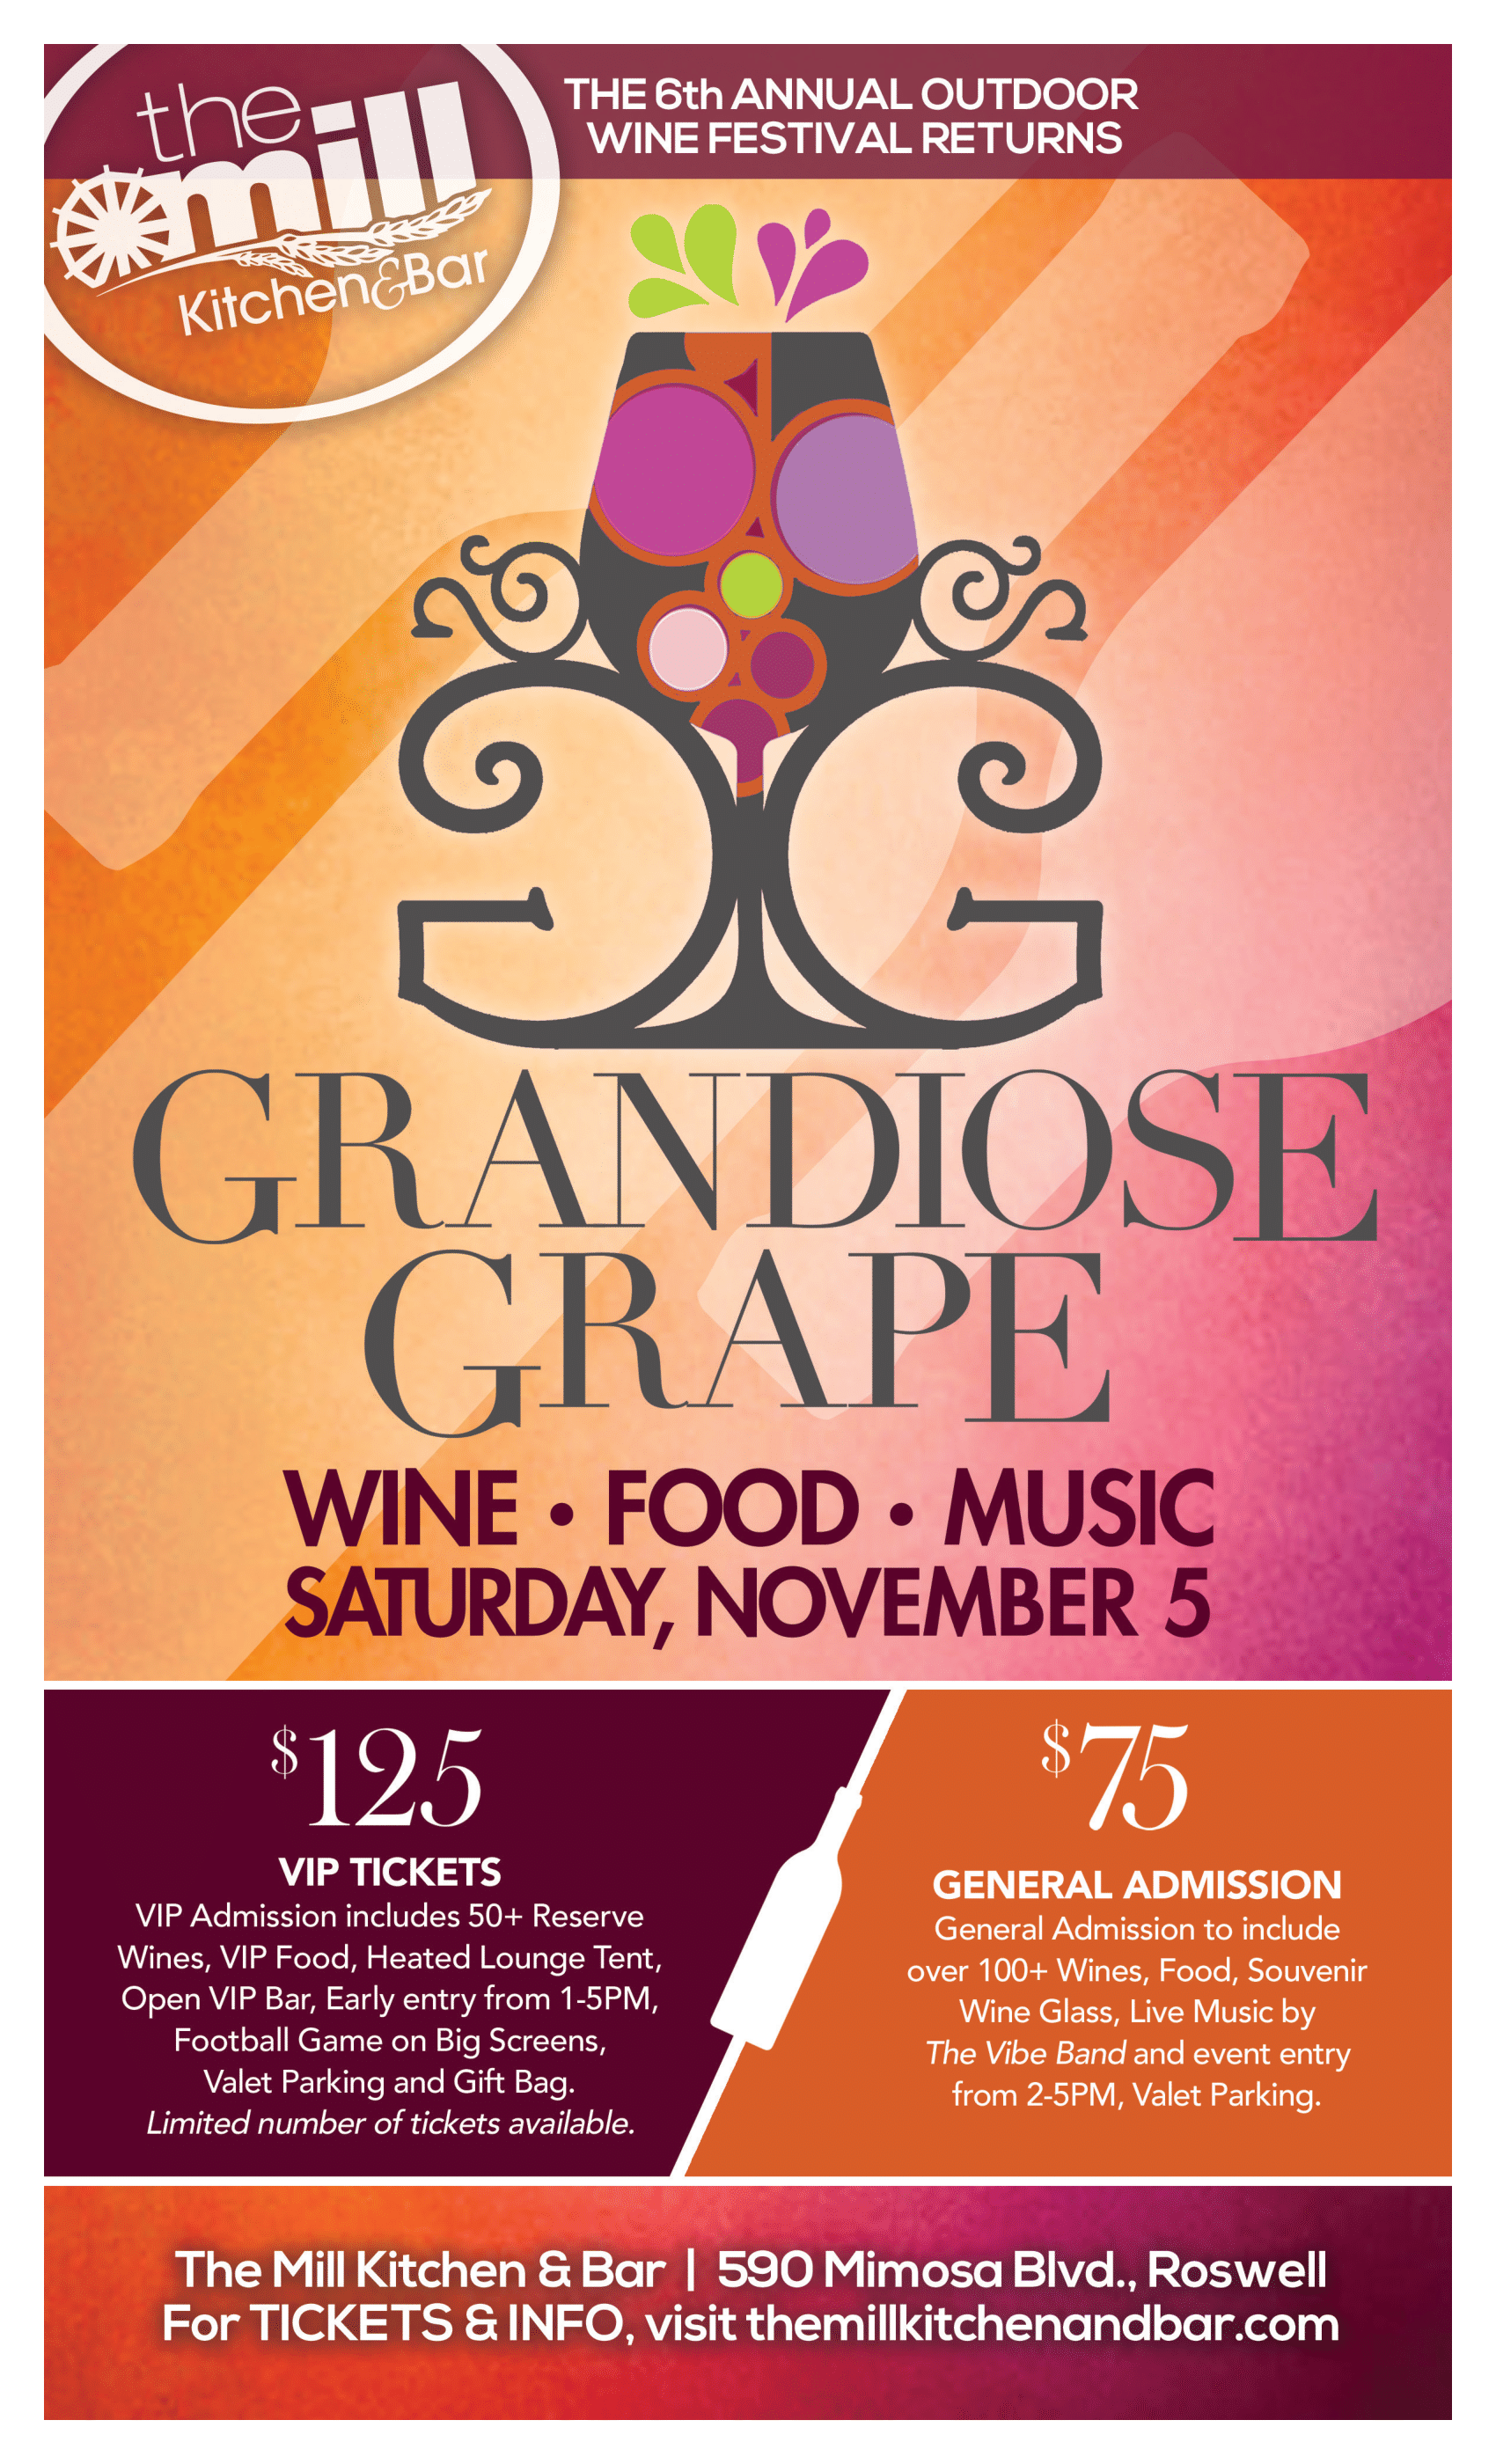 Grandiose Grape Wine Festival The Mill Kitchen and Bar Roswell, GA